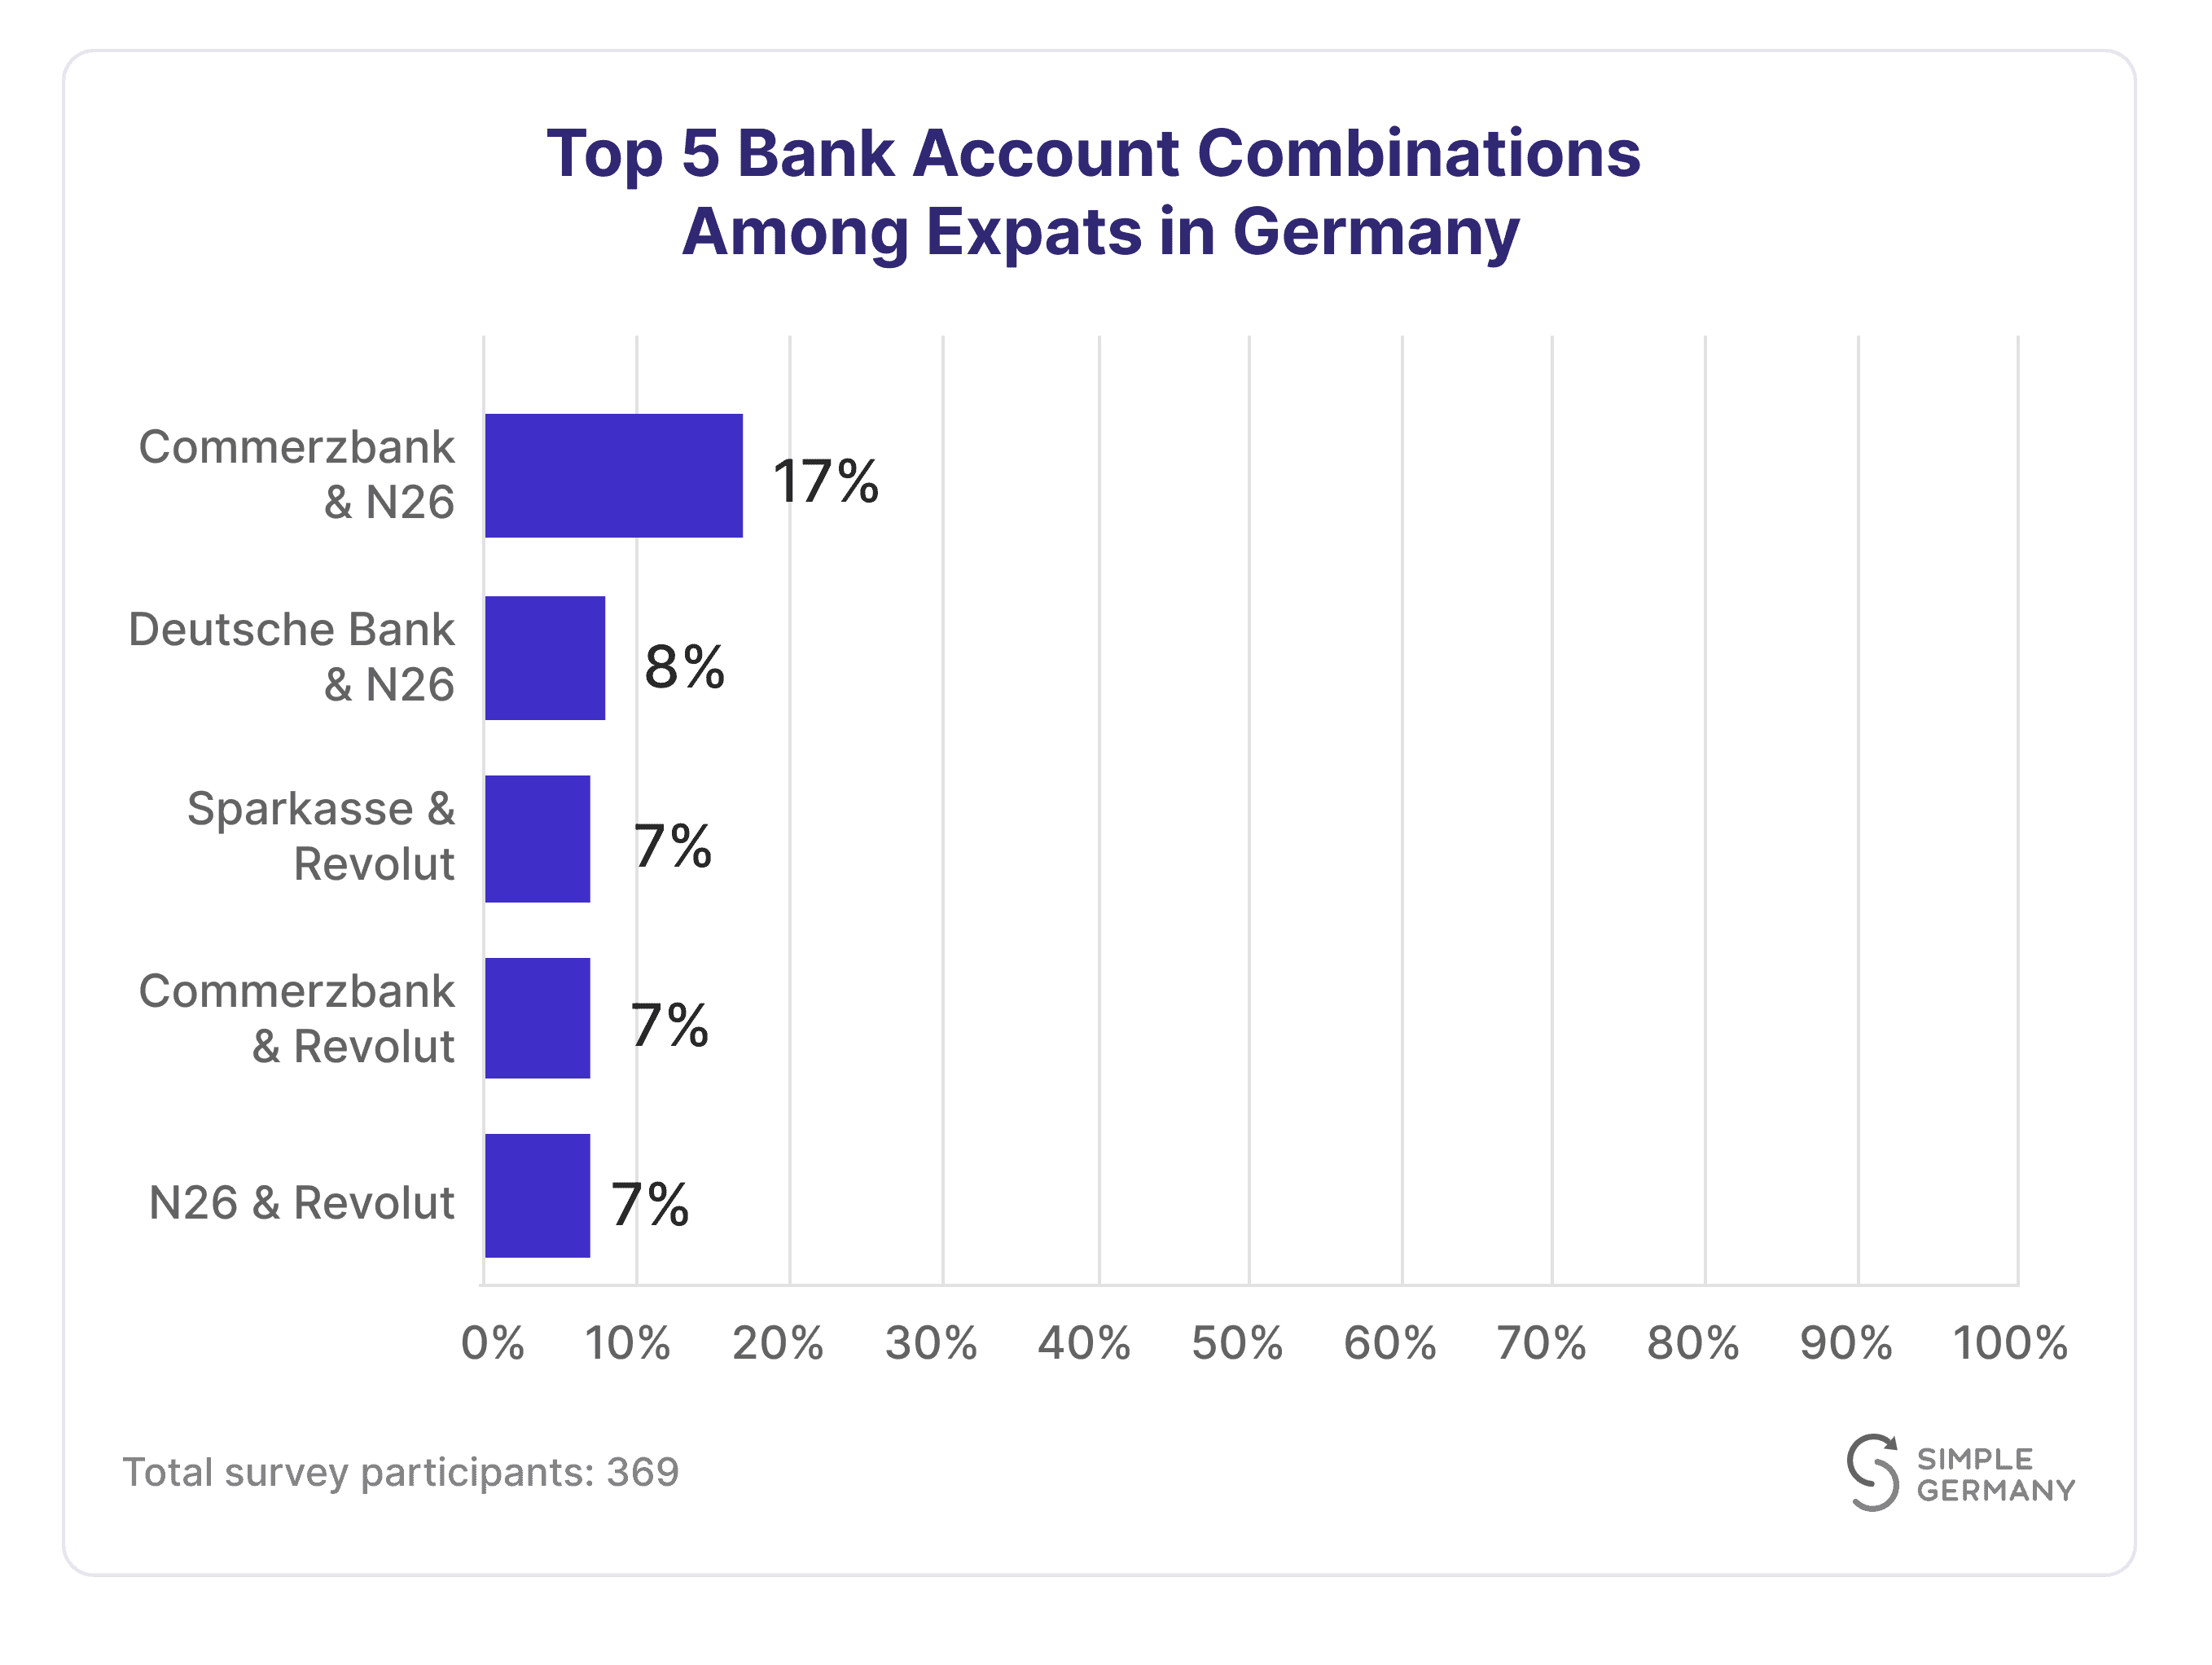 Top 5 bank combinations